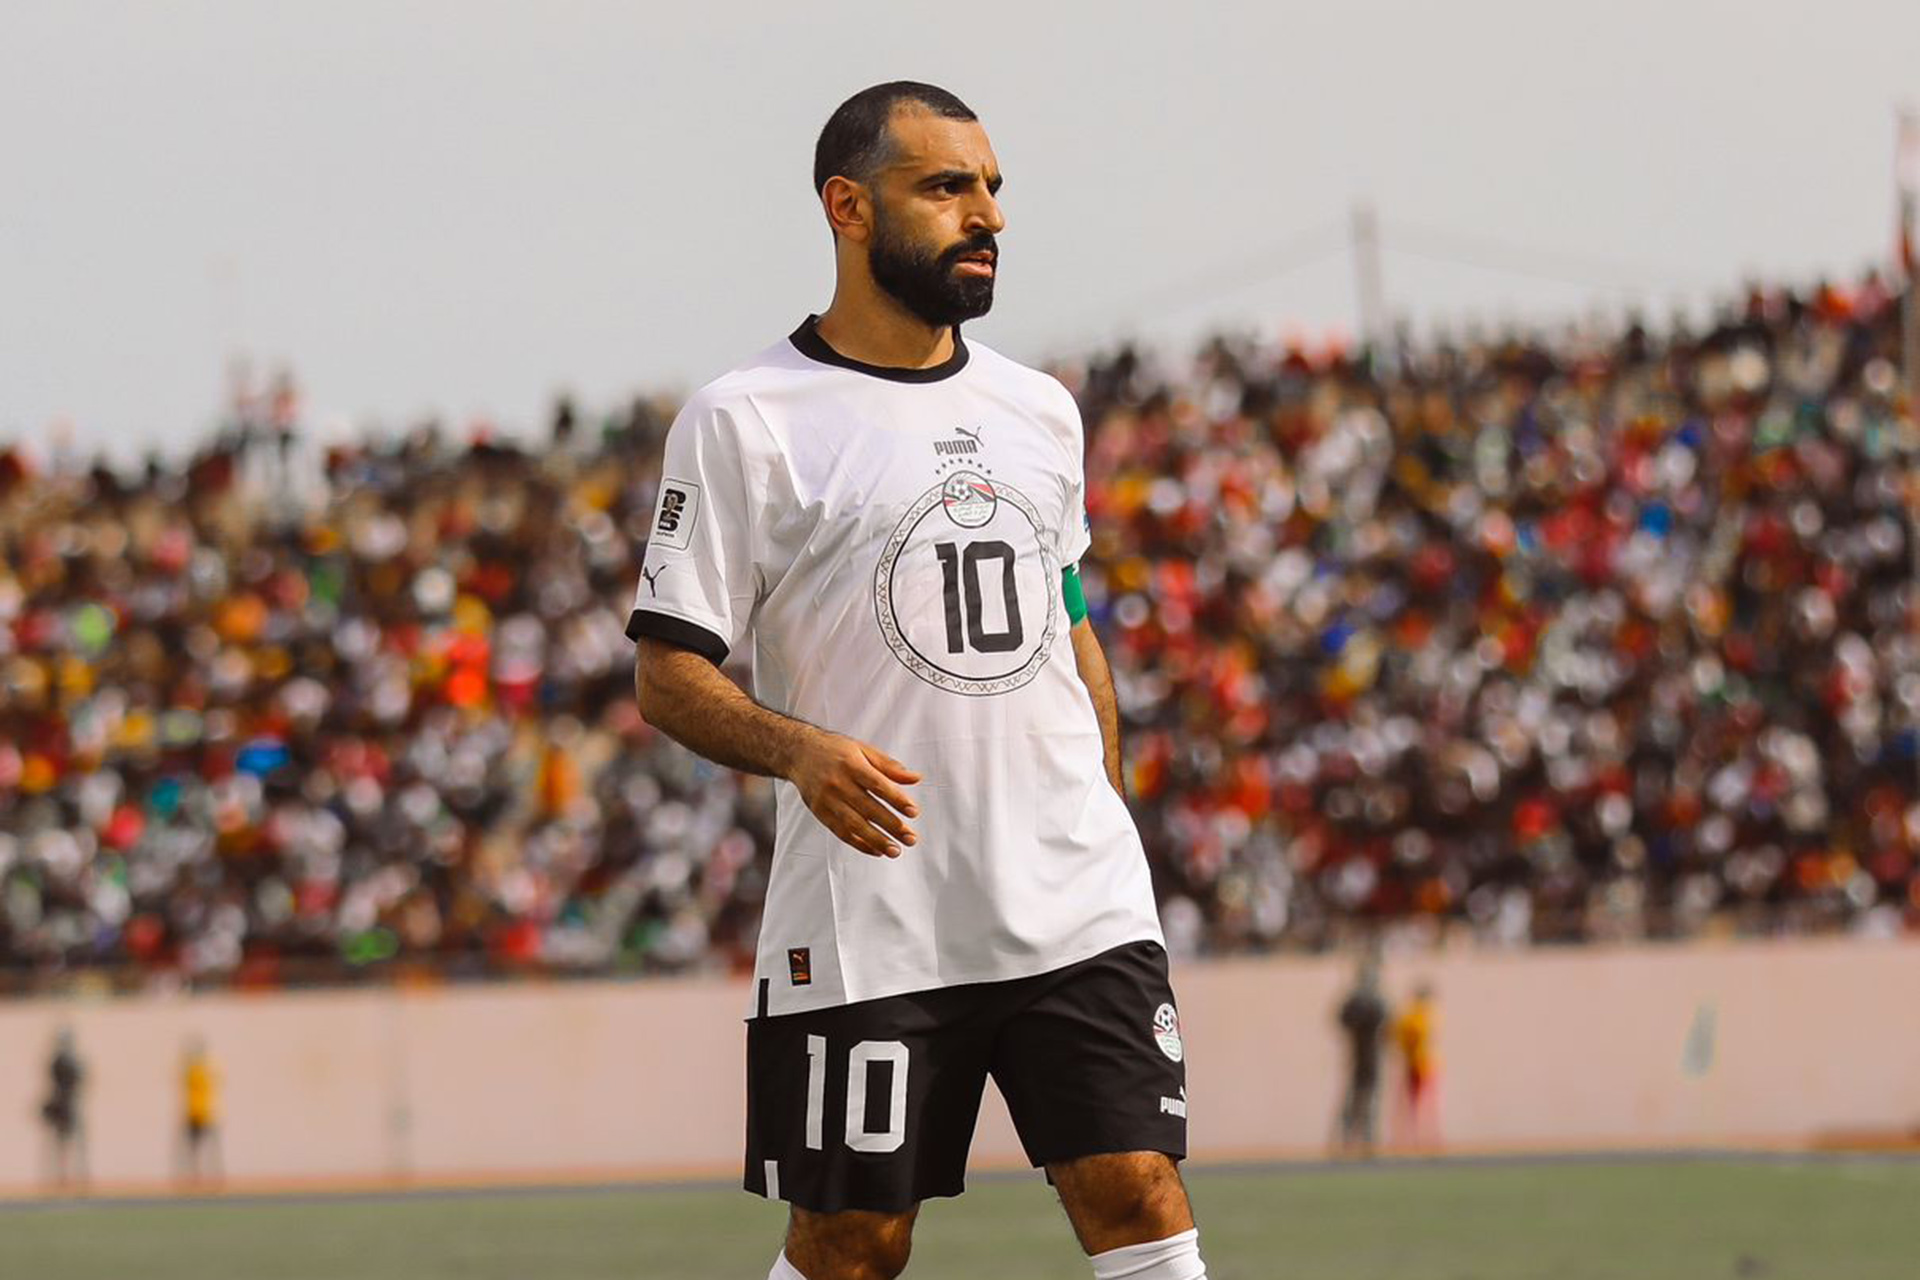 صلاح يجنب مصر الهزيمة والجزائر تنتفض ضد أوغندا في تصفيات كأس العالم 2026 | رياضة – البوكس نيوز